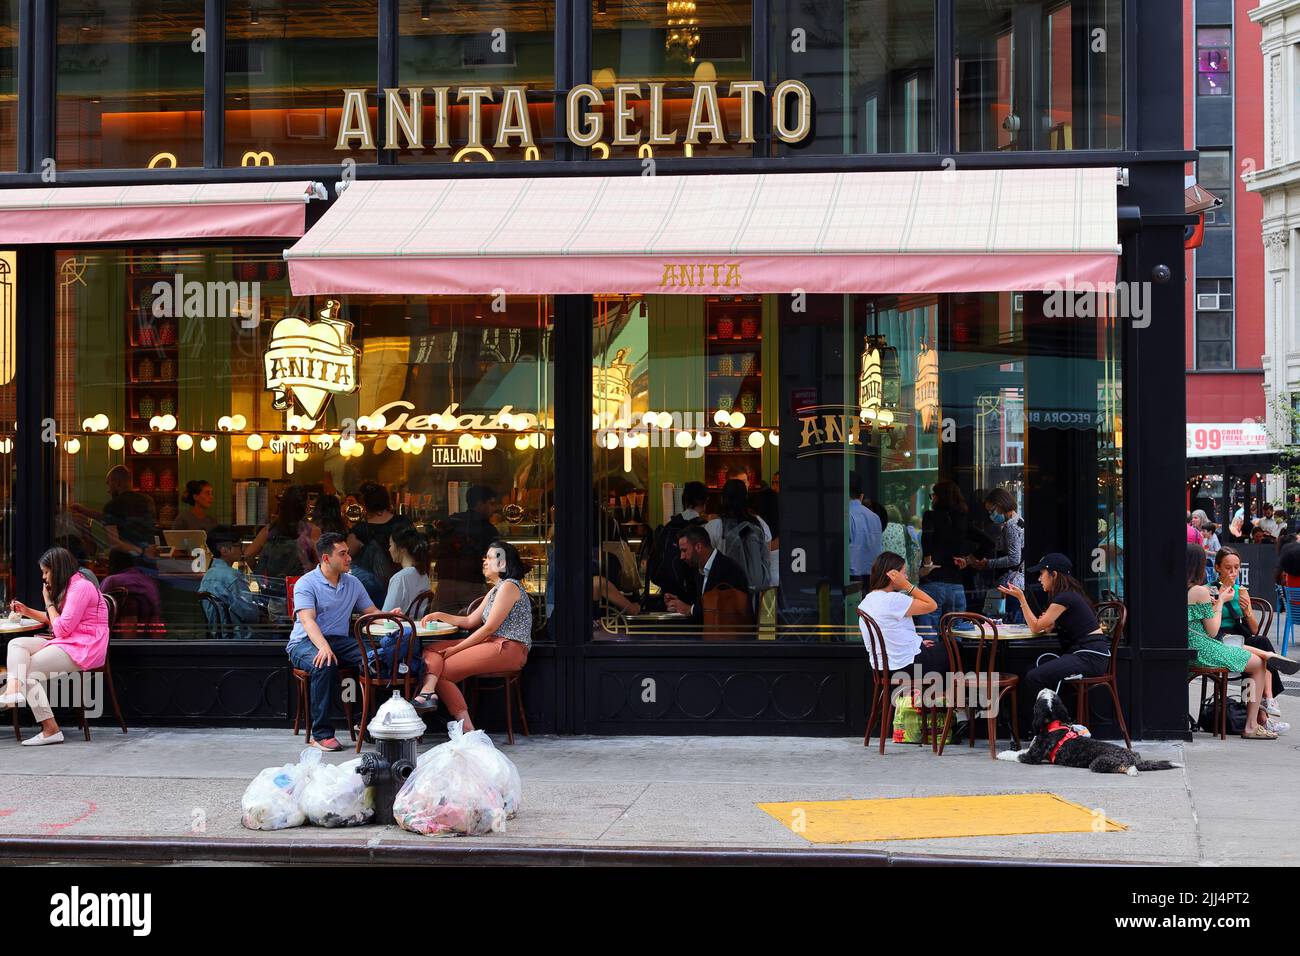 Anita La Mamma del Gelato, 1141 Broadway, Nueva York, Nueva York, Nueva York, foto de una tienda de gelato israelí en Manhattan nómada. Foto de stock